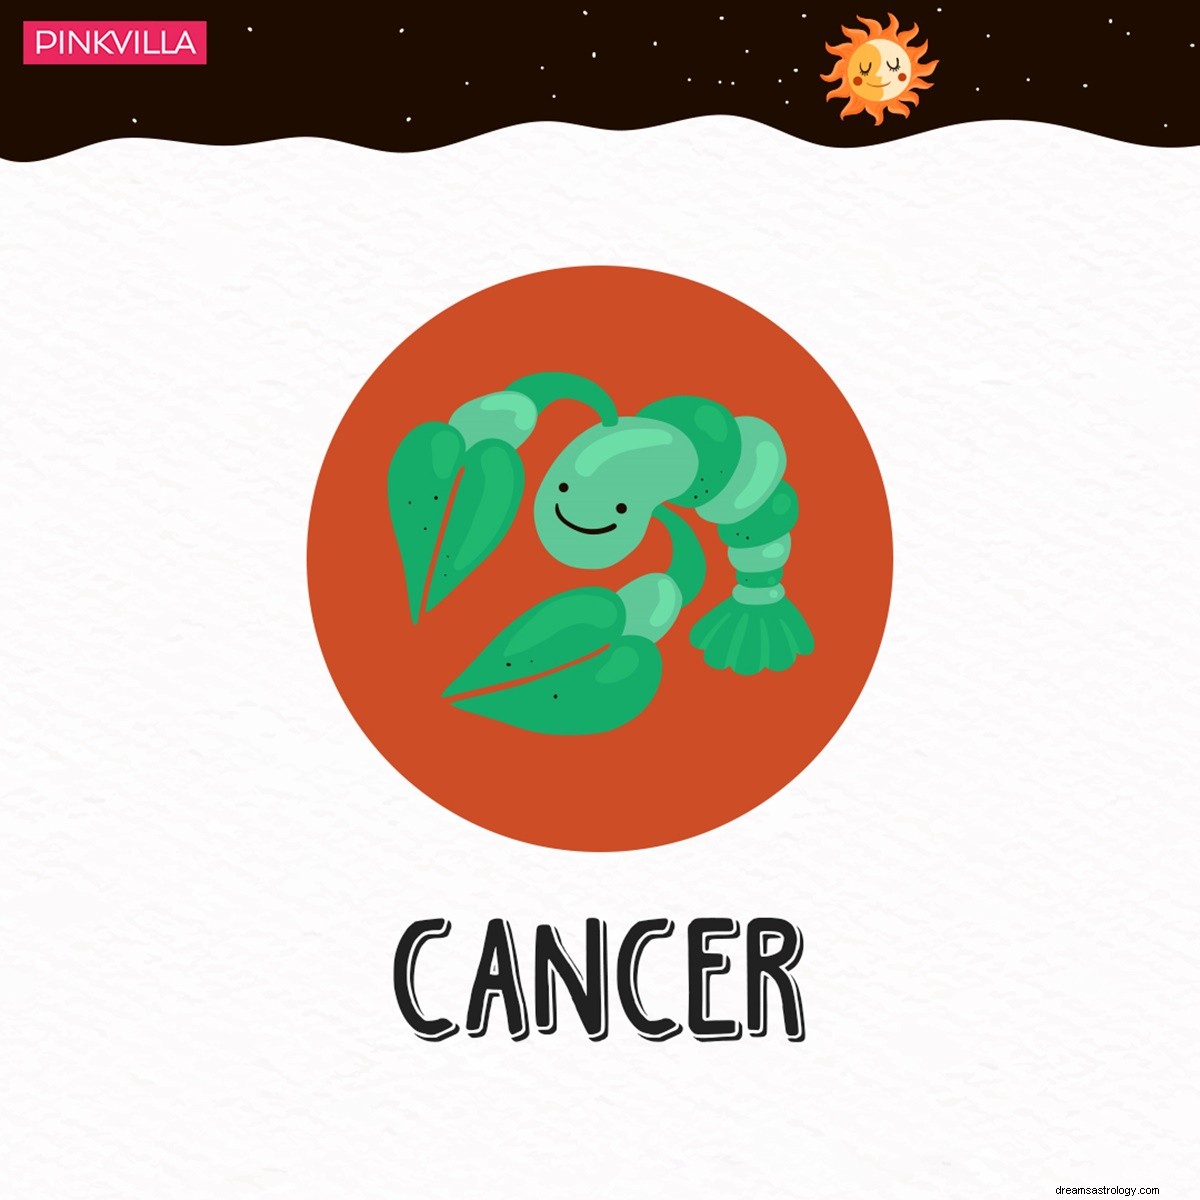 Cancer à Bélier :4 signes du zodiaque qui ont tendance à sauter des repas pour perdre du poids 